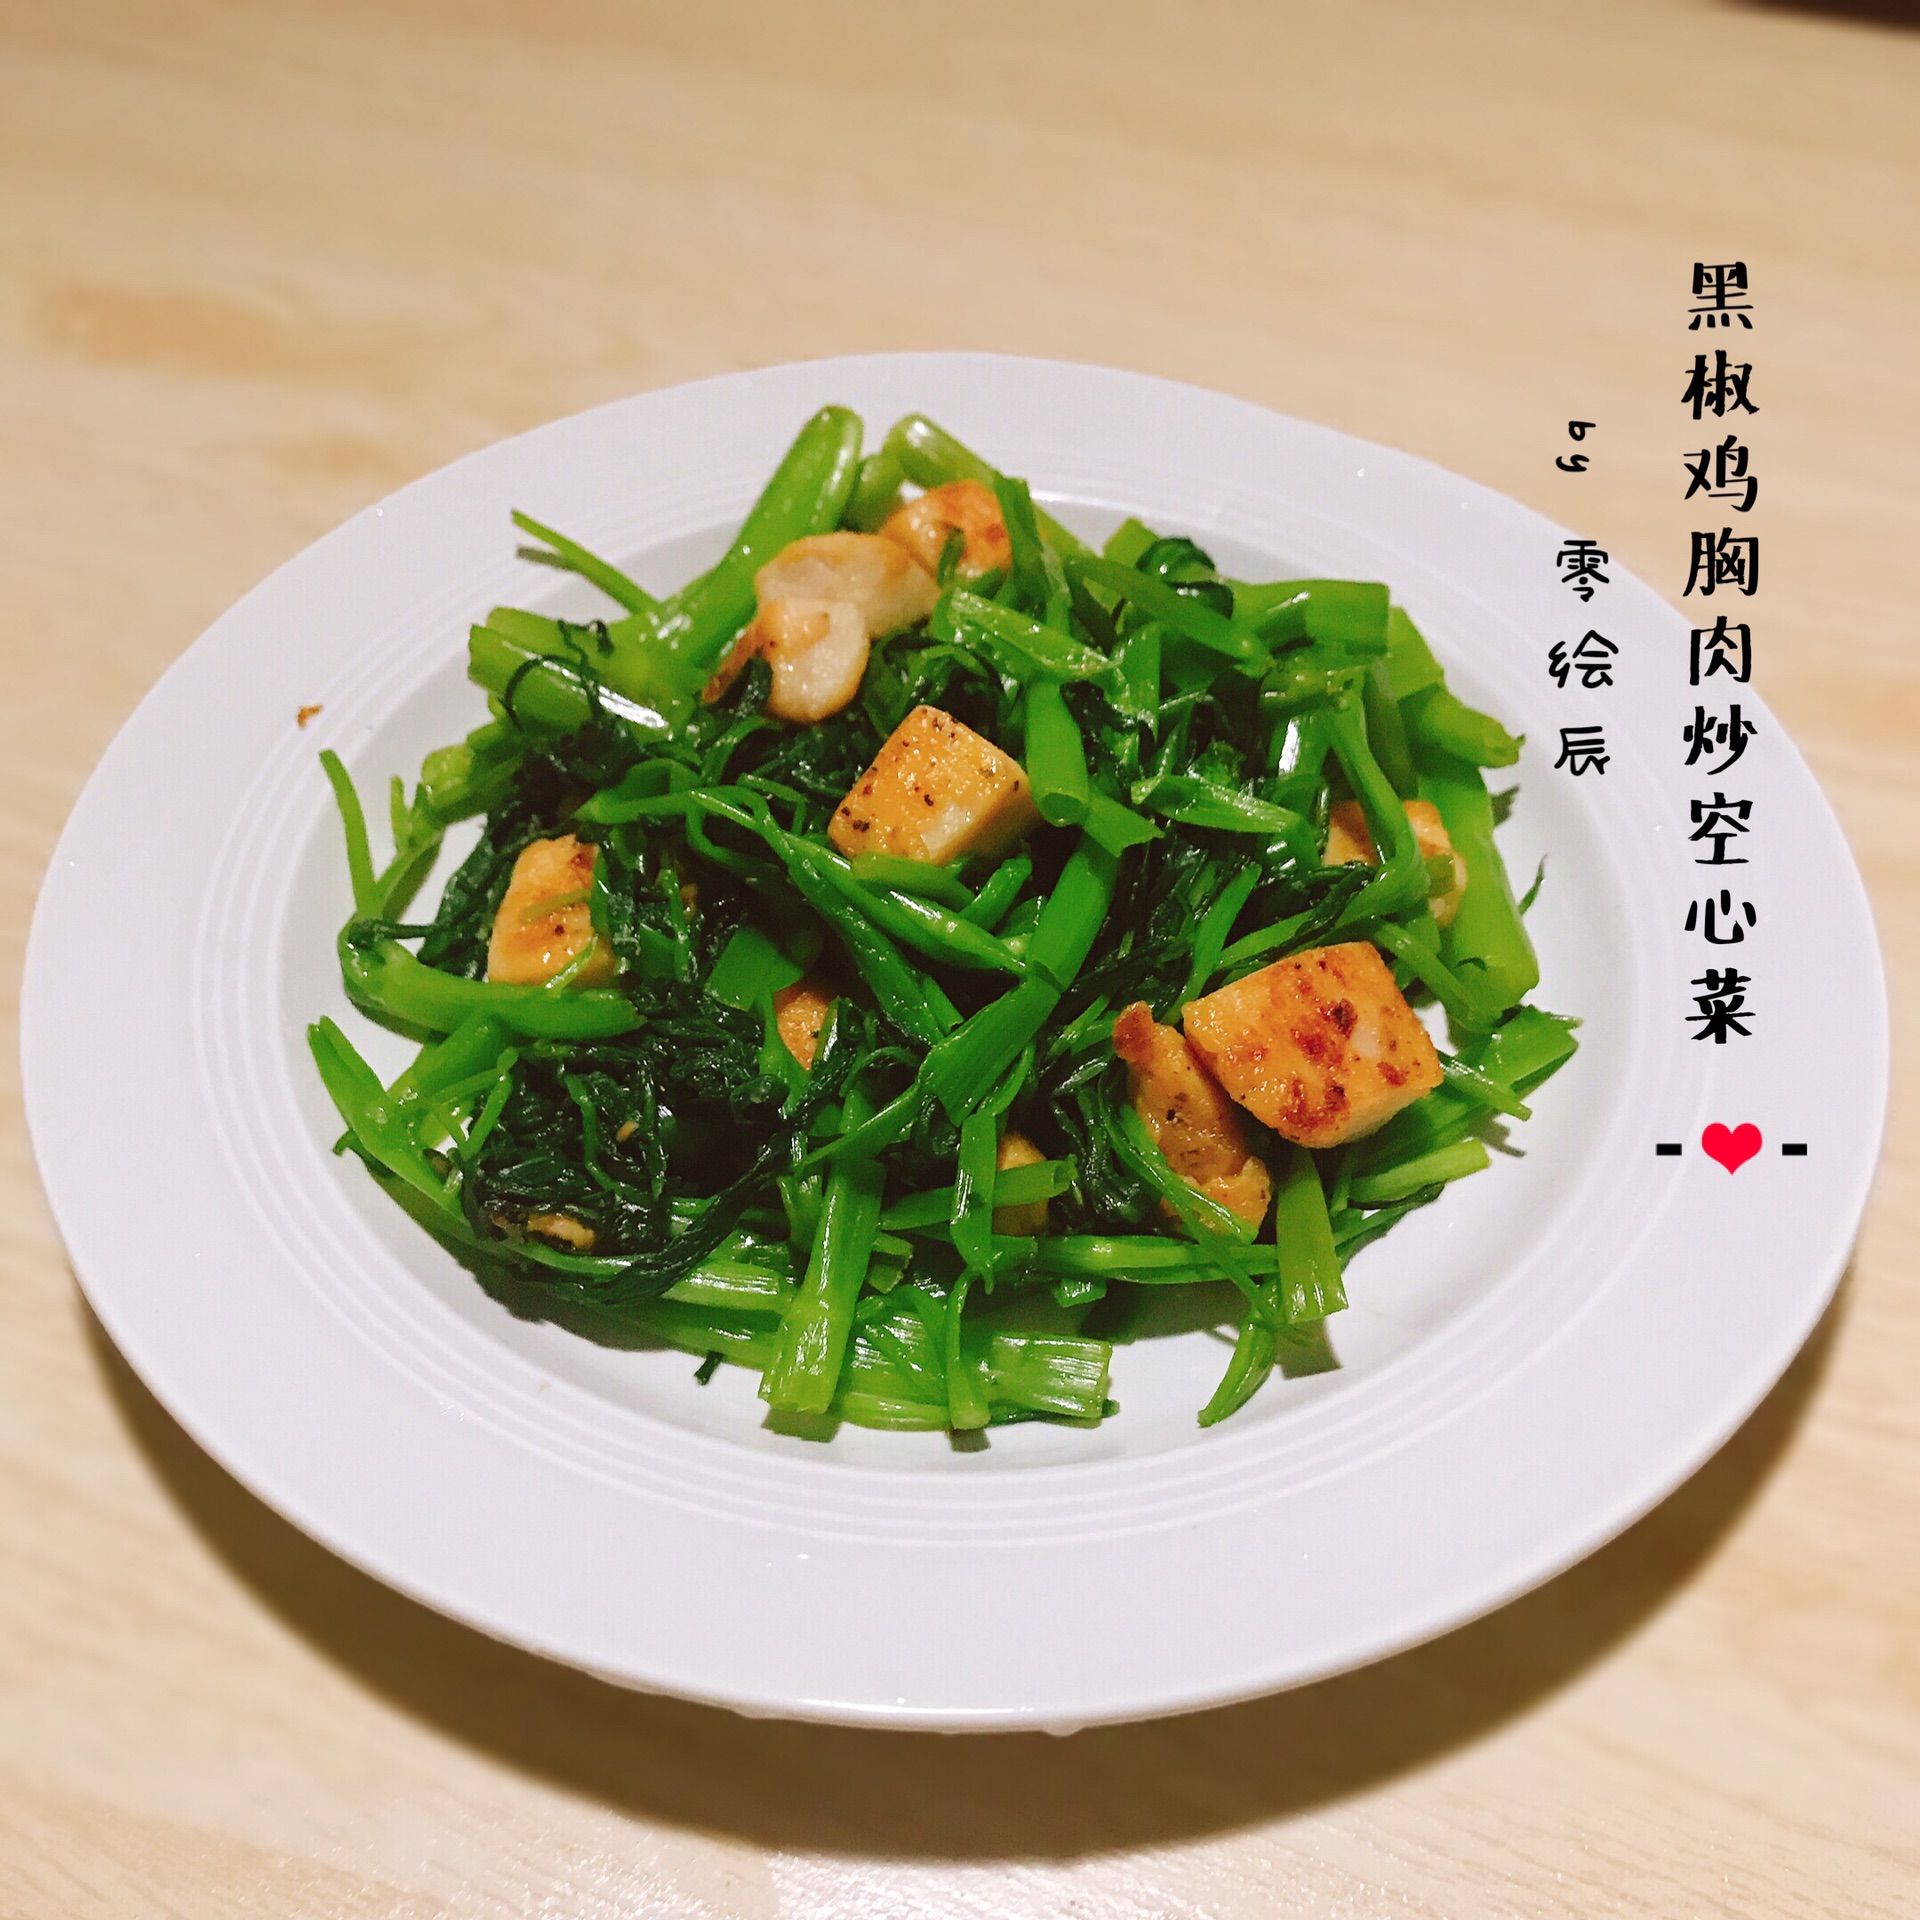 黑椒鸡胸肉炒空心菜怎么做 黑椒鸡胸肉炒空心菜的做法 零绘辰 豆果美食